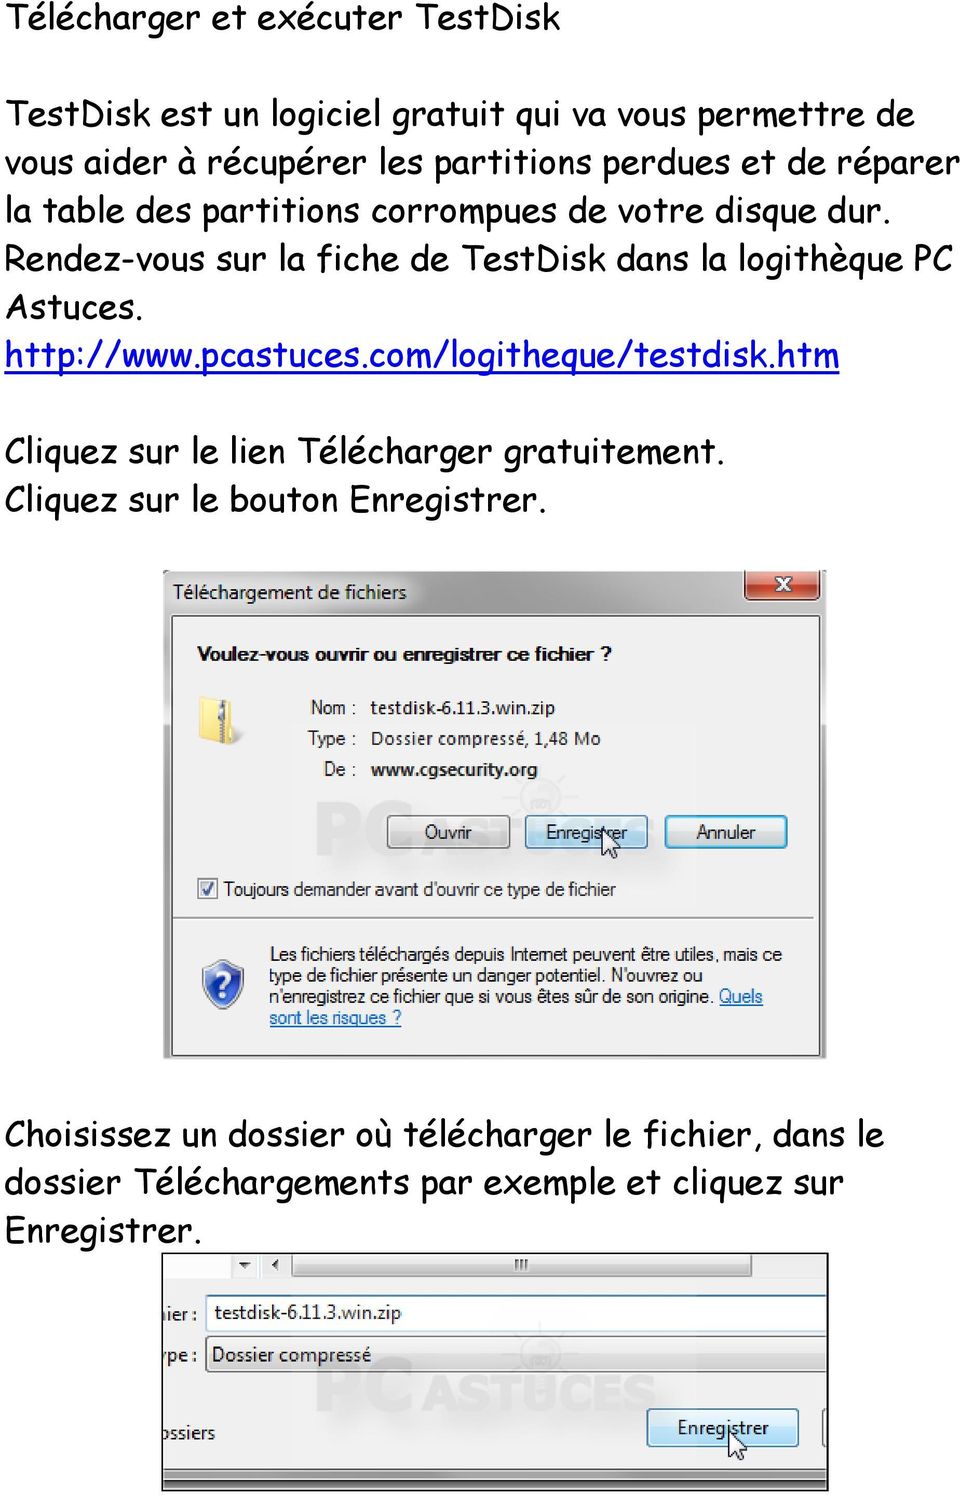 Rendez-vous sur la fiche de TestDisk dans la logithèque PC Astuces. http://www.pcastuces.com/logitheque/testdisk.